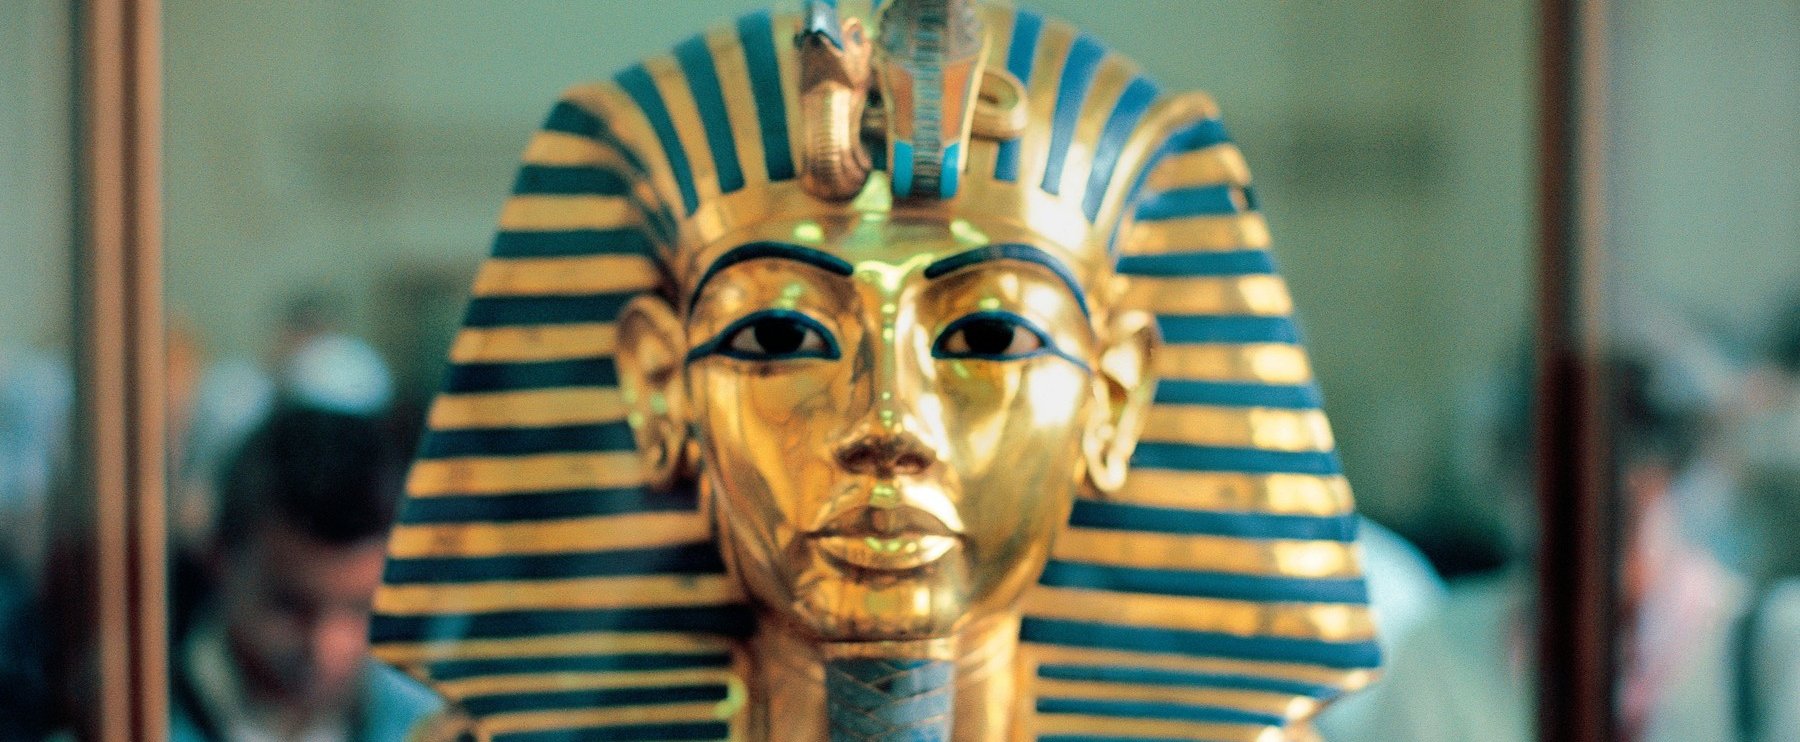 Sokkoltak a tudósok, az egyiptomi piramisoknál olyan jeleket találtak az egyik szarkofágon, amely megzavarta a szakembereket